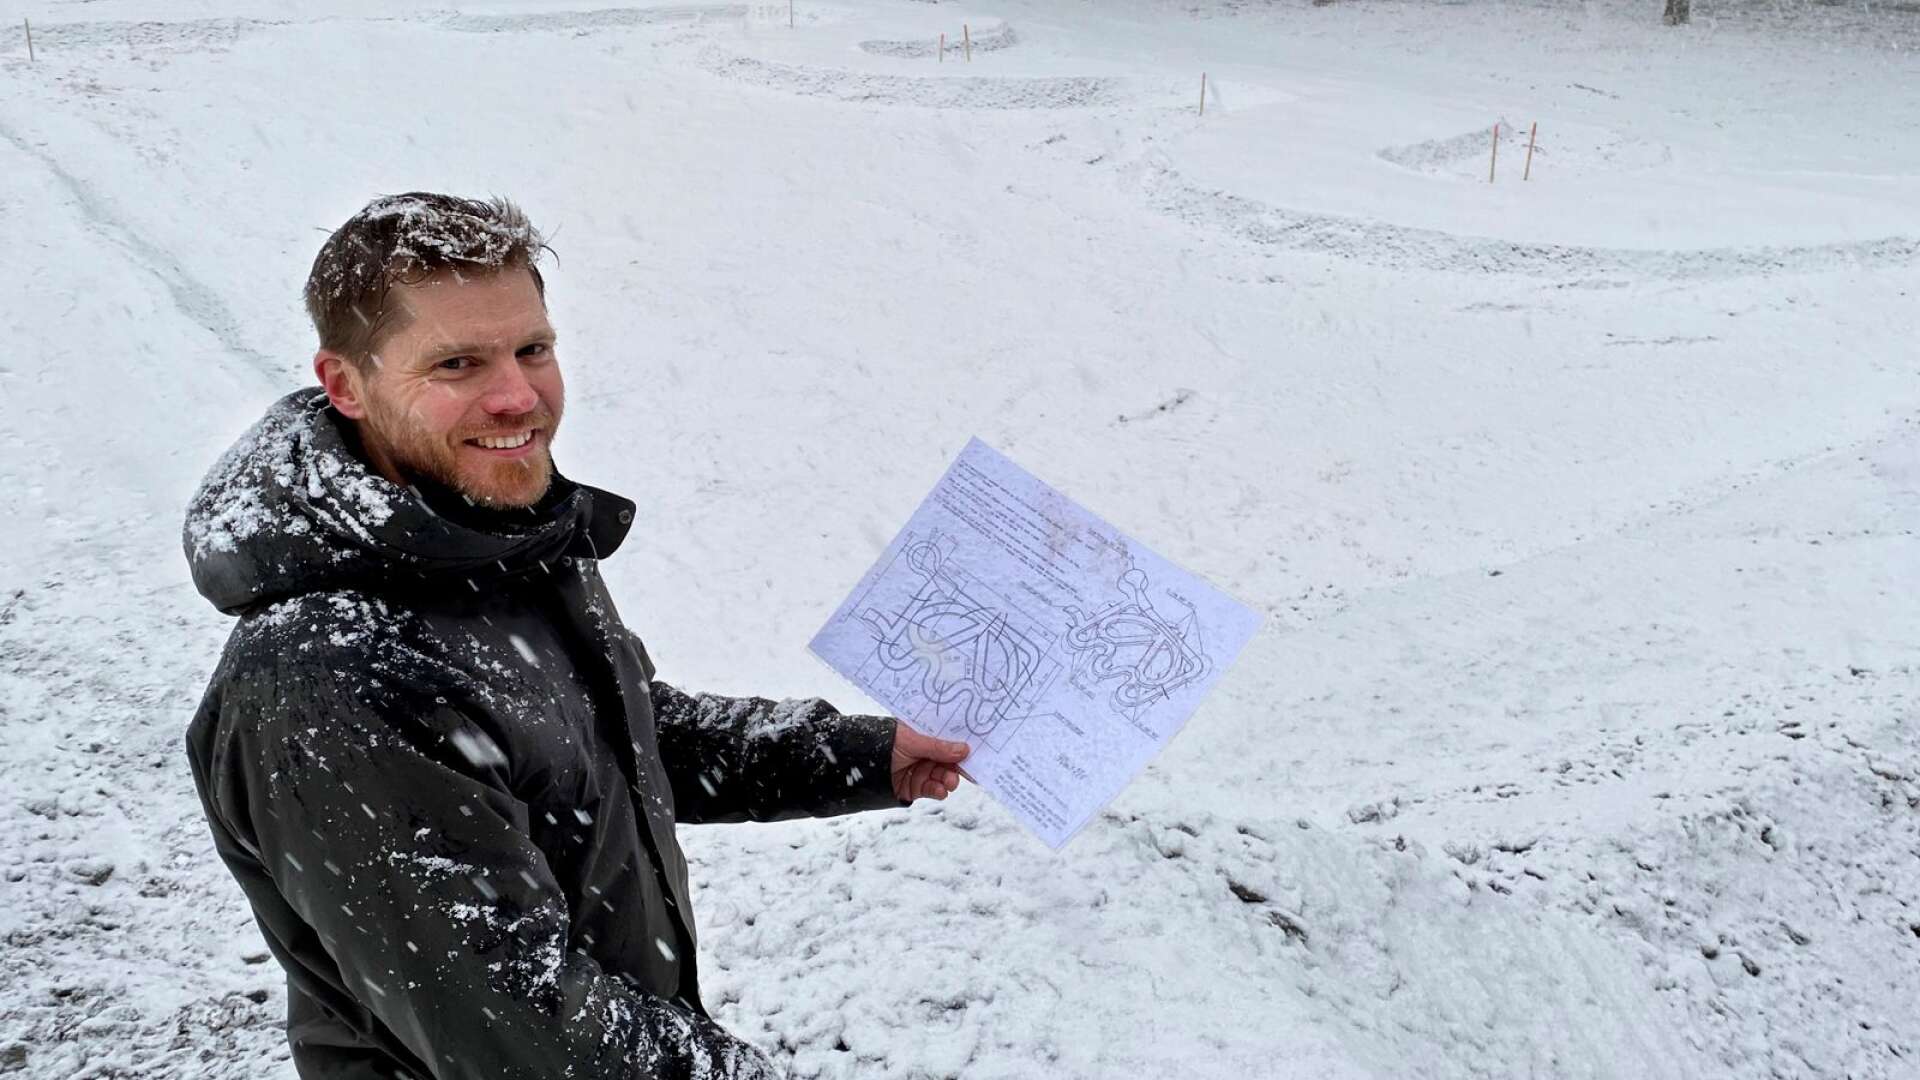 Här pågår bygget. När NWT träffade Anders Alsbjer på Frykstahöjden snöade det kraftigt. Bara konturerna av det som ska bli en pumptrack syns i bakgrunden.